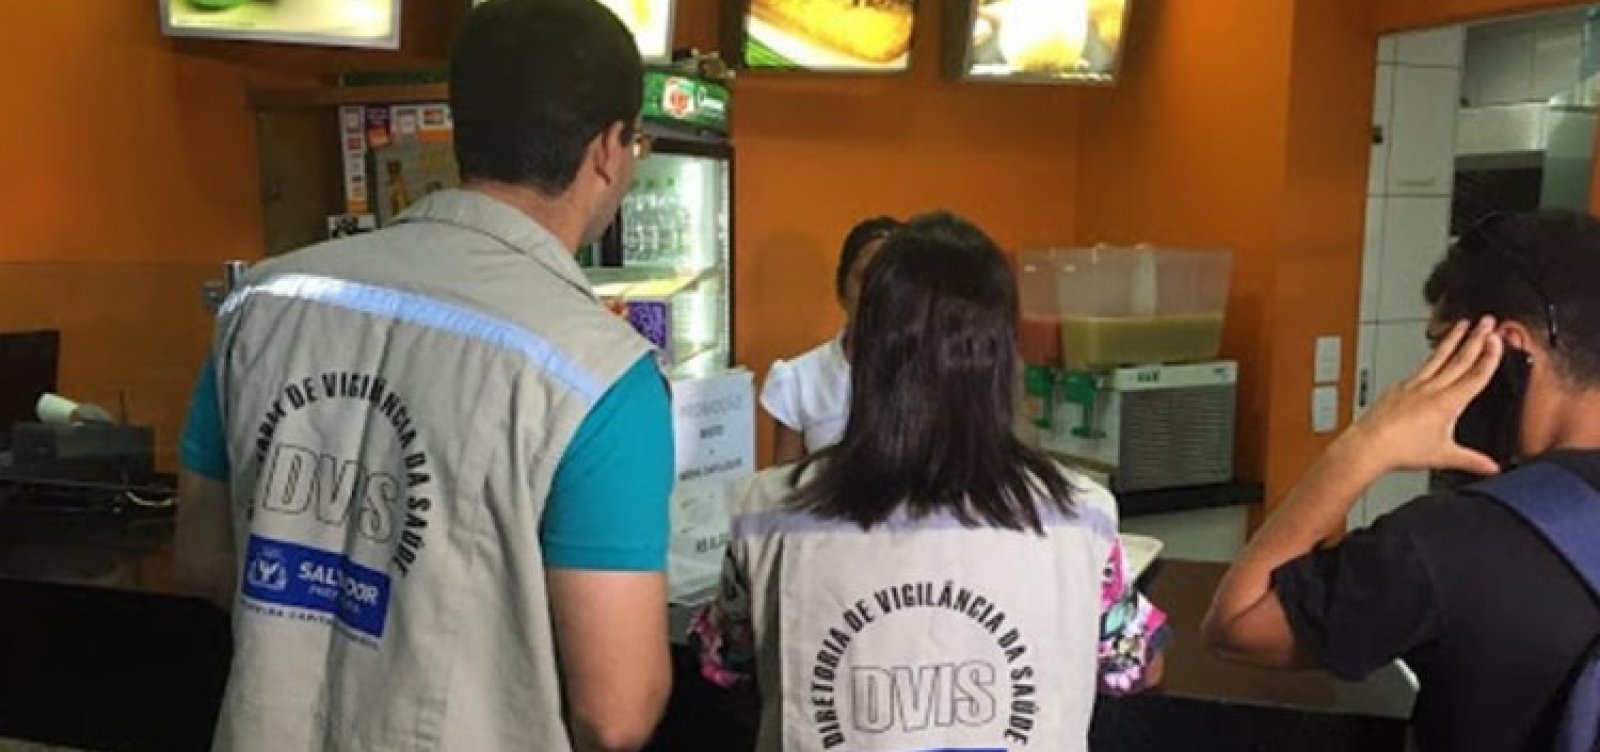 Vigilância Sanitária fiscaliza restaurantes com delivery nesta sexta 